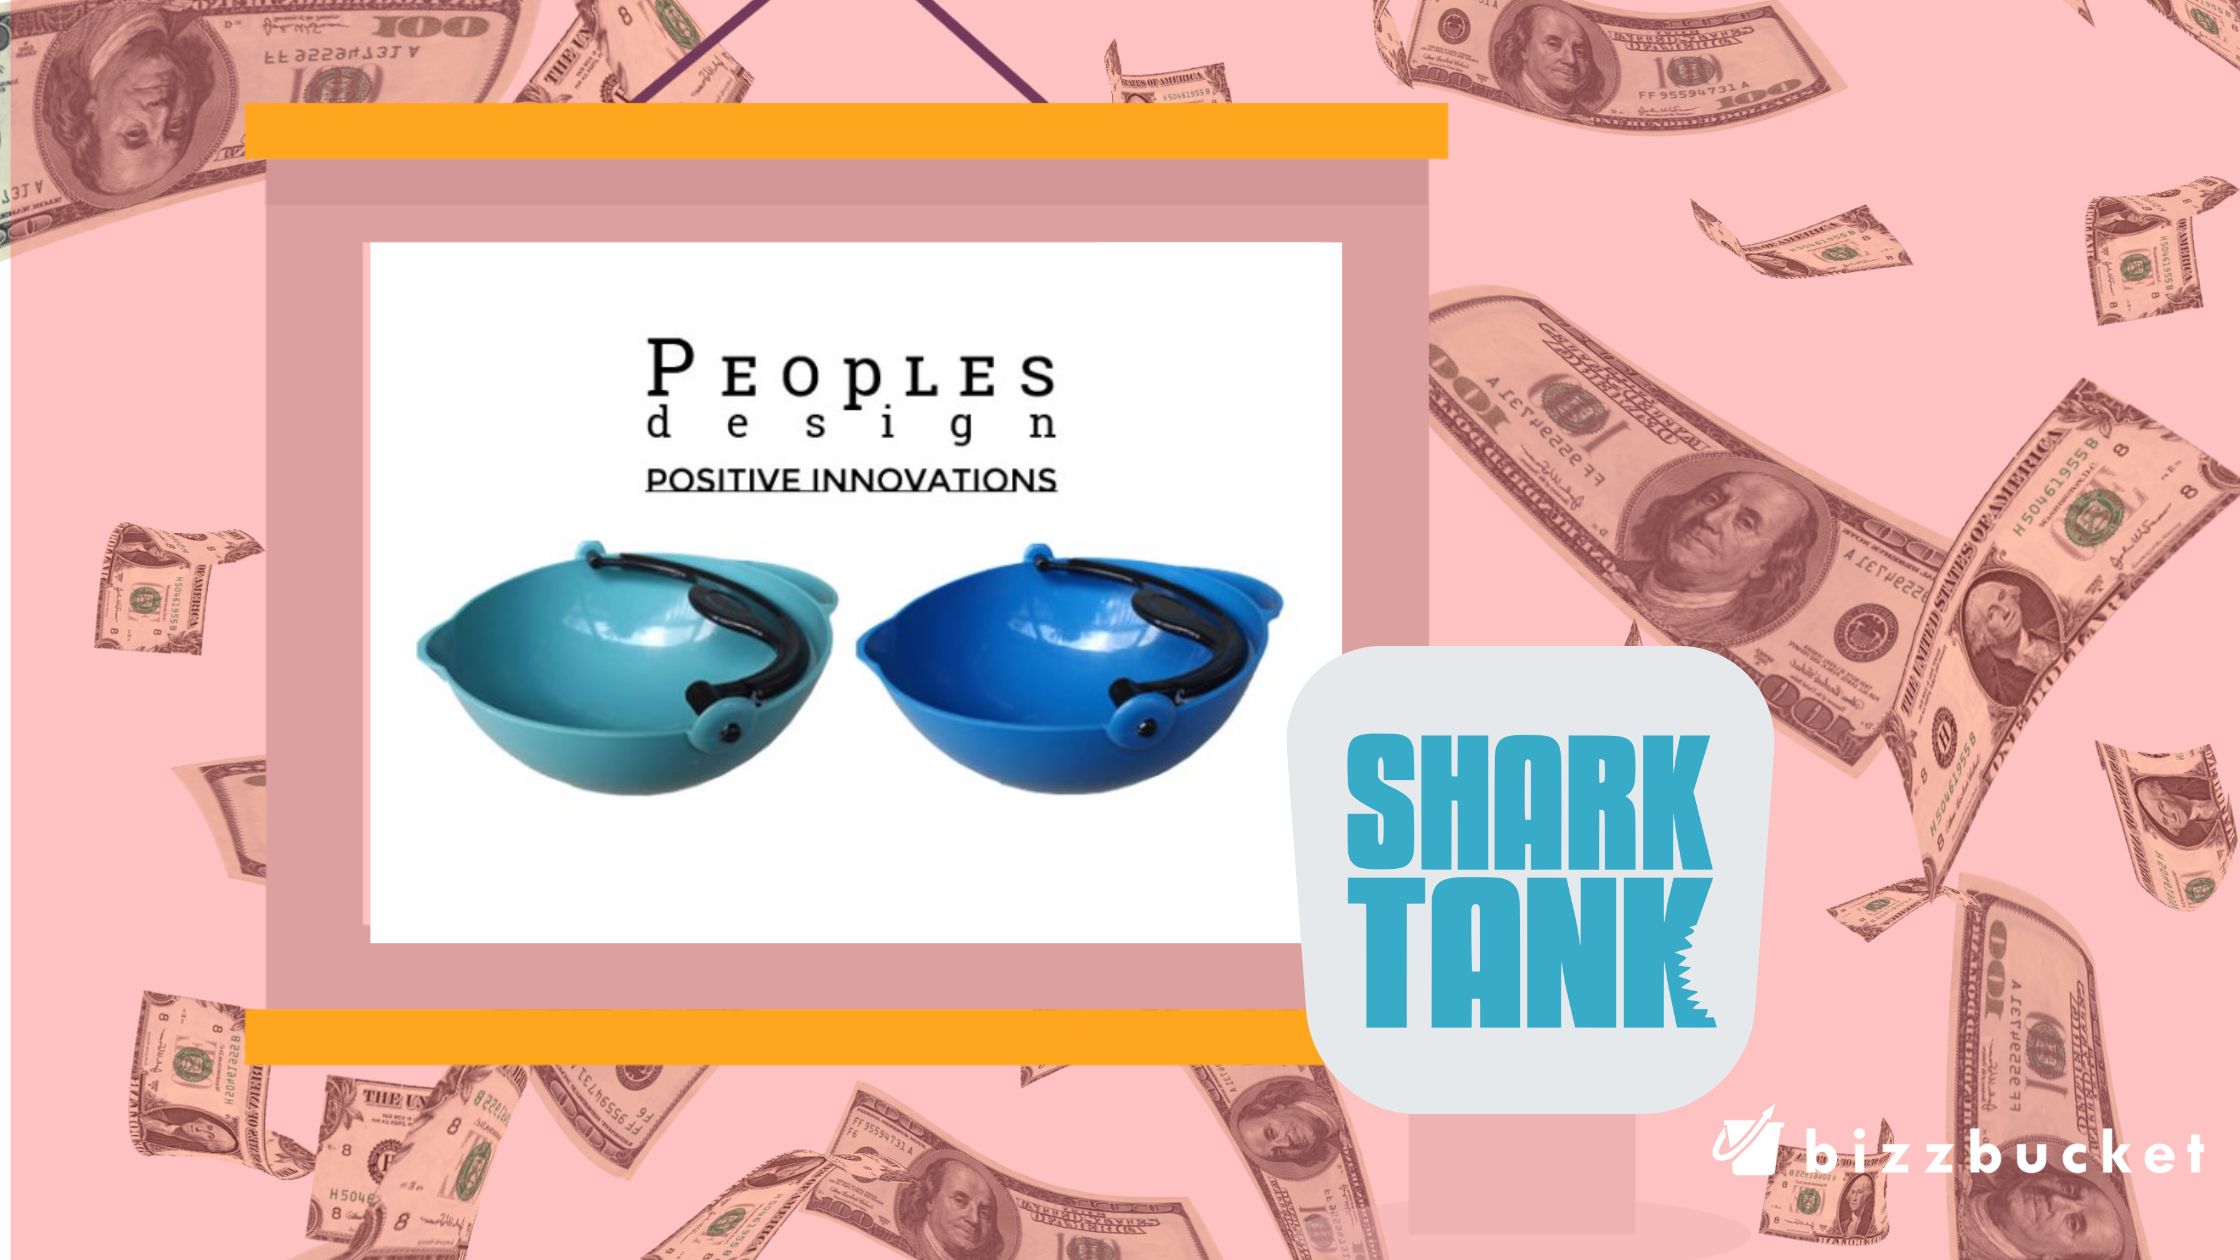 Scooping Bowl shark tabk update